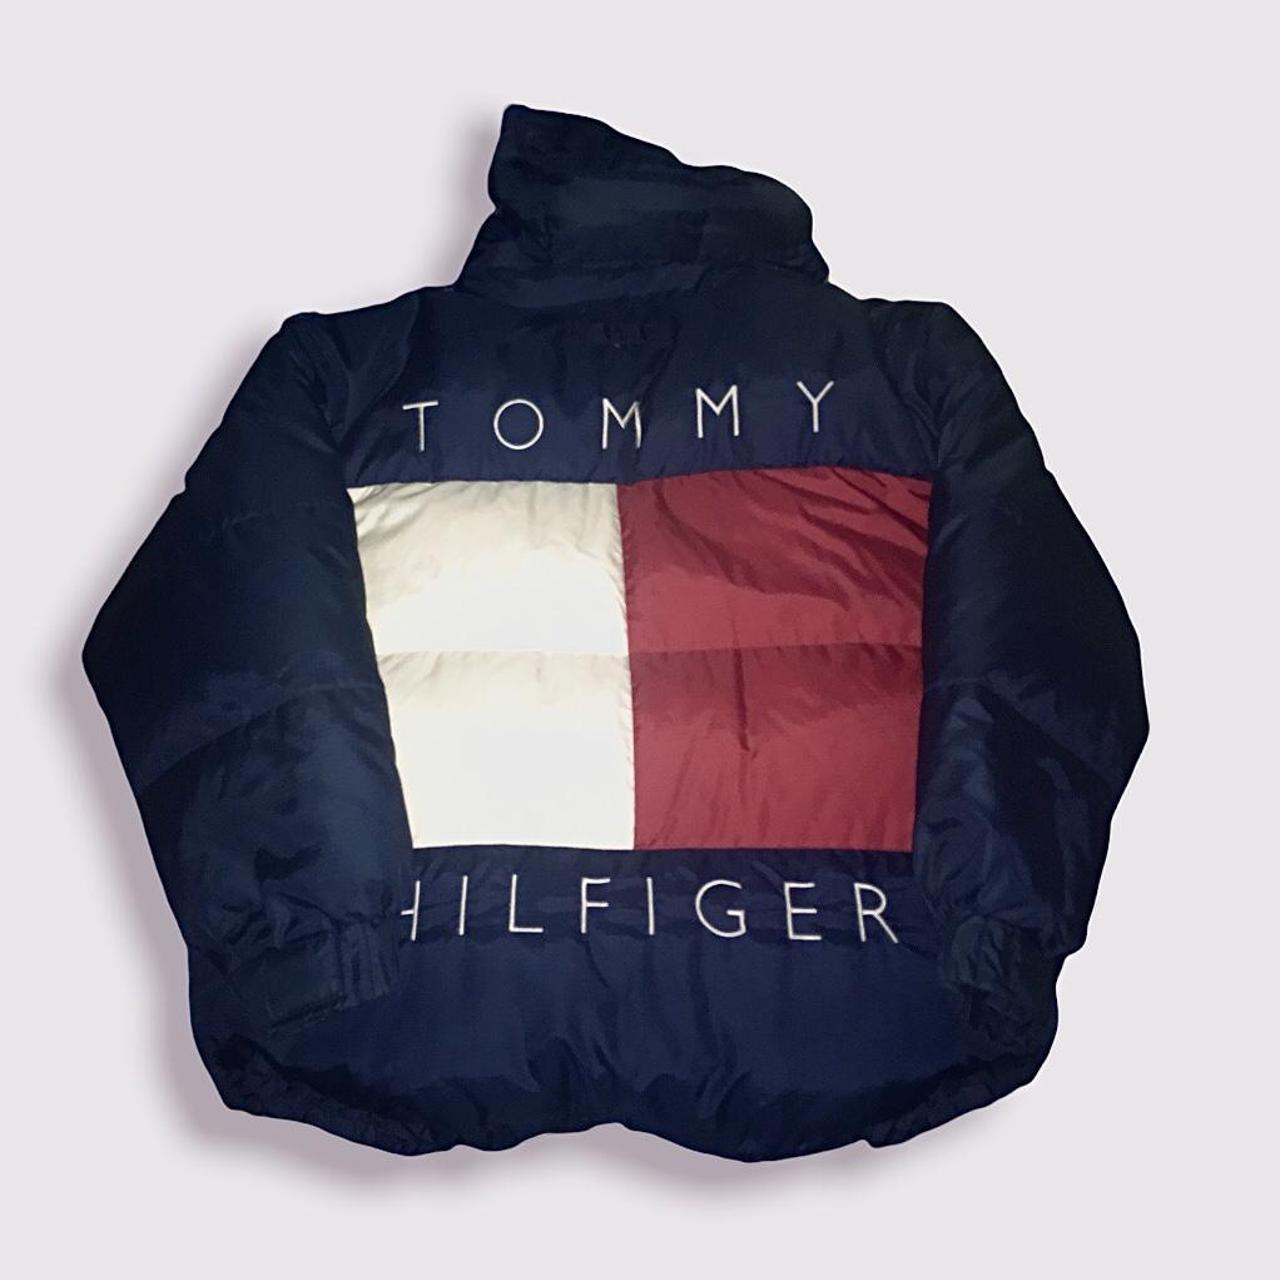 VINTAGE 90s GRAIL: Tommy Hilfiger Big Flag Spell Out... - Depop